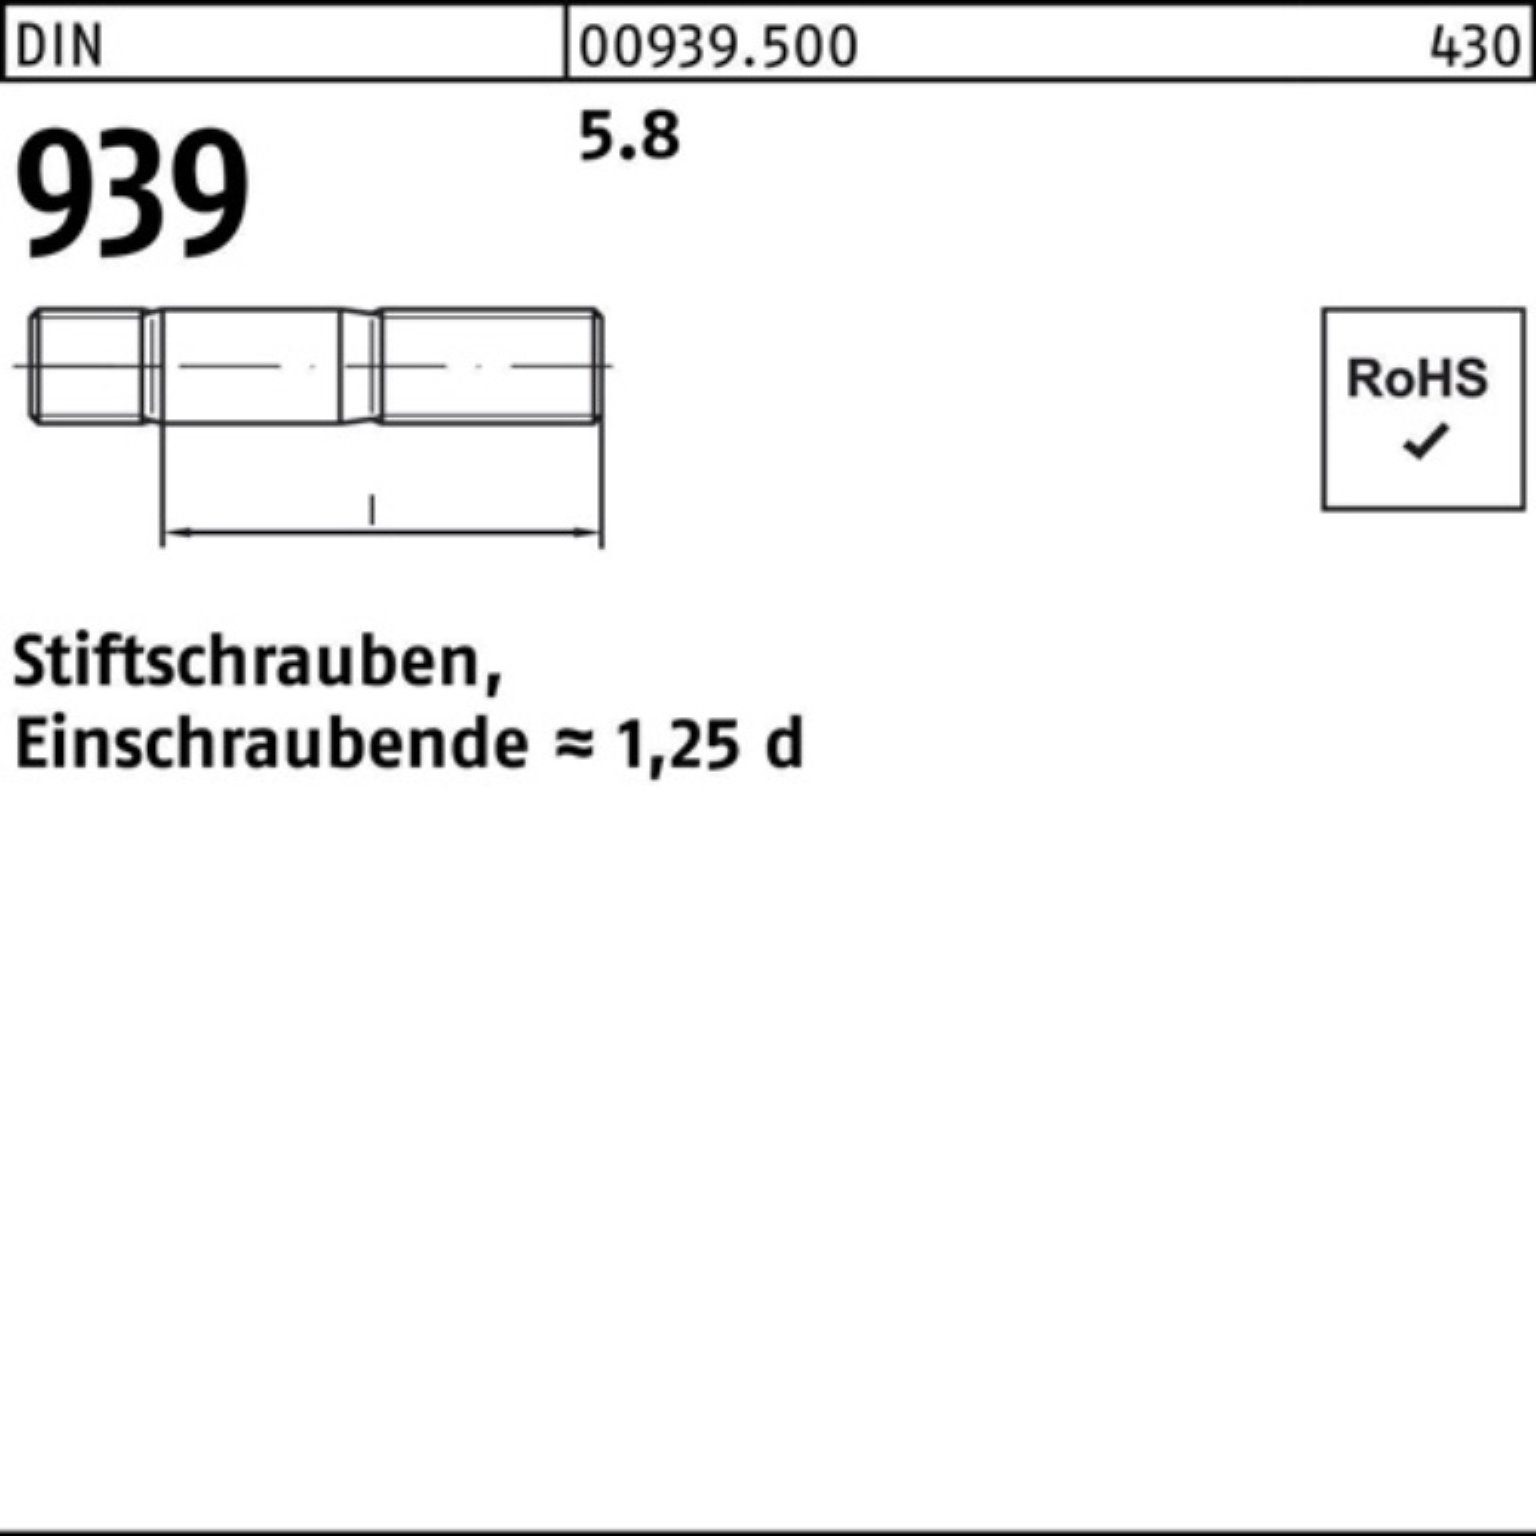 Reyher Stiftschraube 100er Pack Stiftschraube DIN M6x 5.8 939 S 100 18 Einschraubende=1,25d